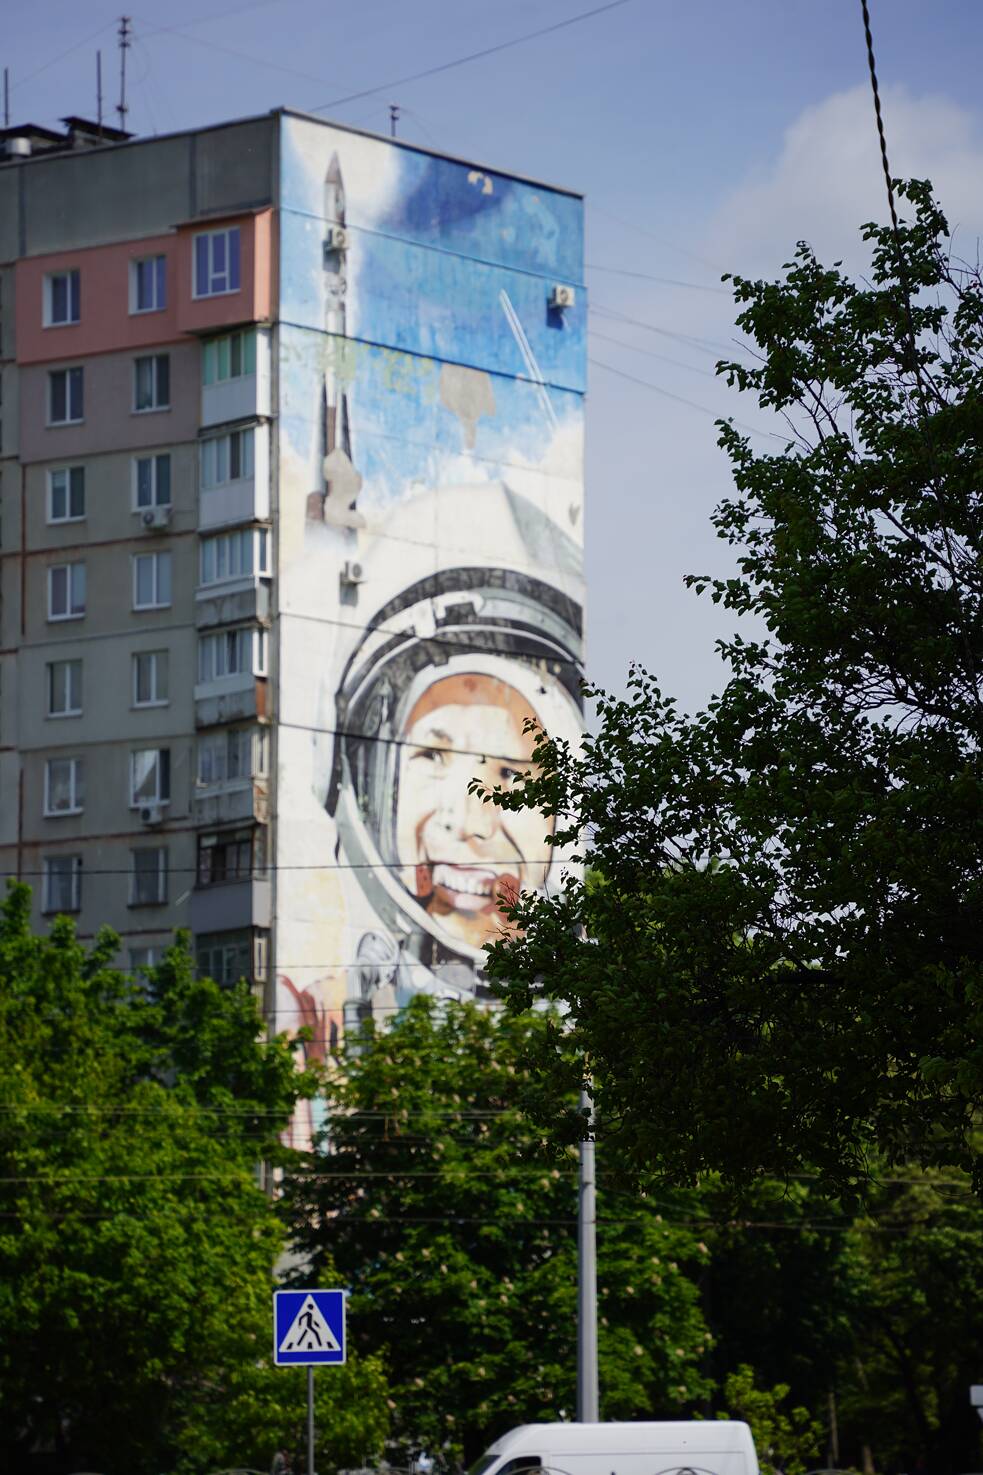 Juriy Gagarin, der erste Mensch im Weltall, lächelt von diesem Murial auf die nach ihm benannte Straße hinunter. Hier in der Nähe wohnt Valeriy (77).